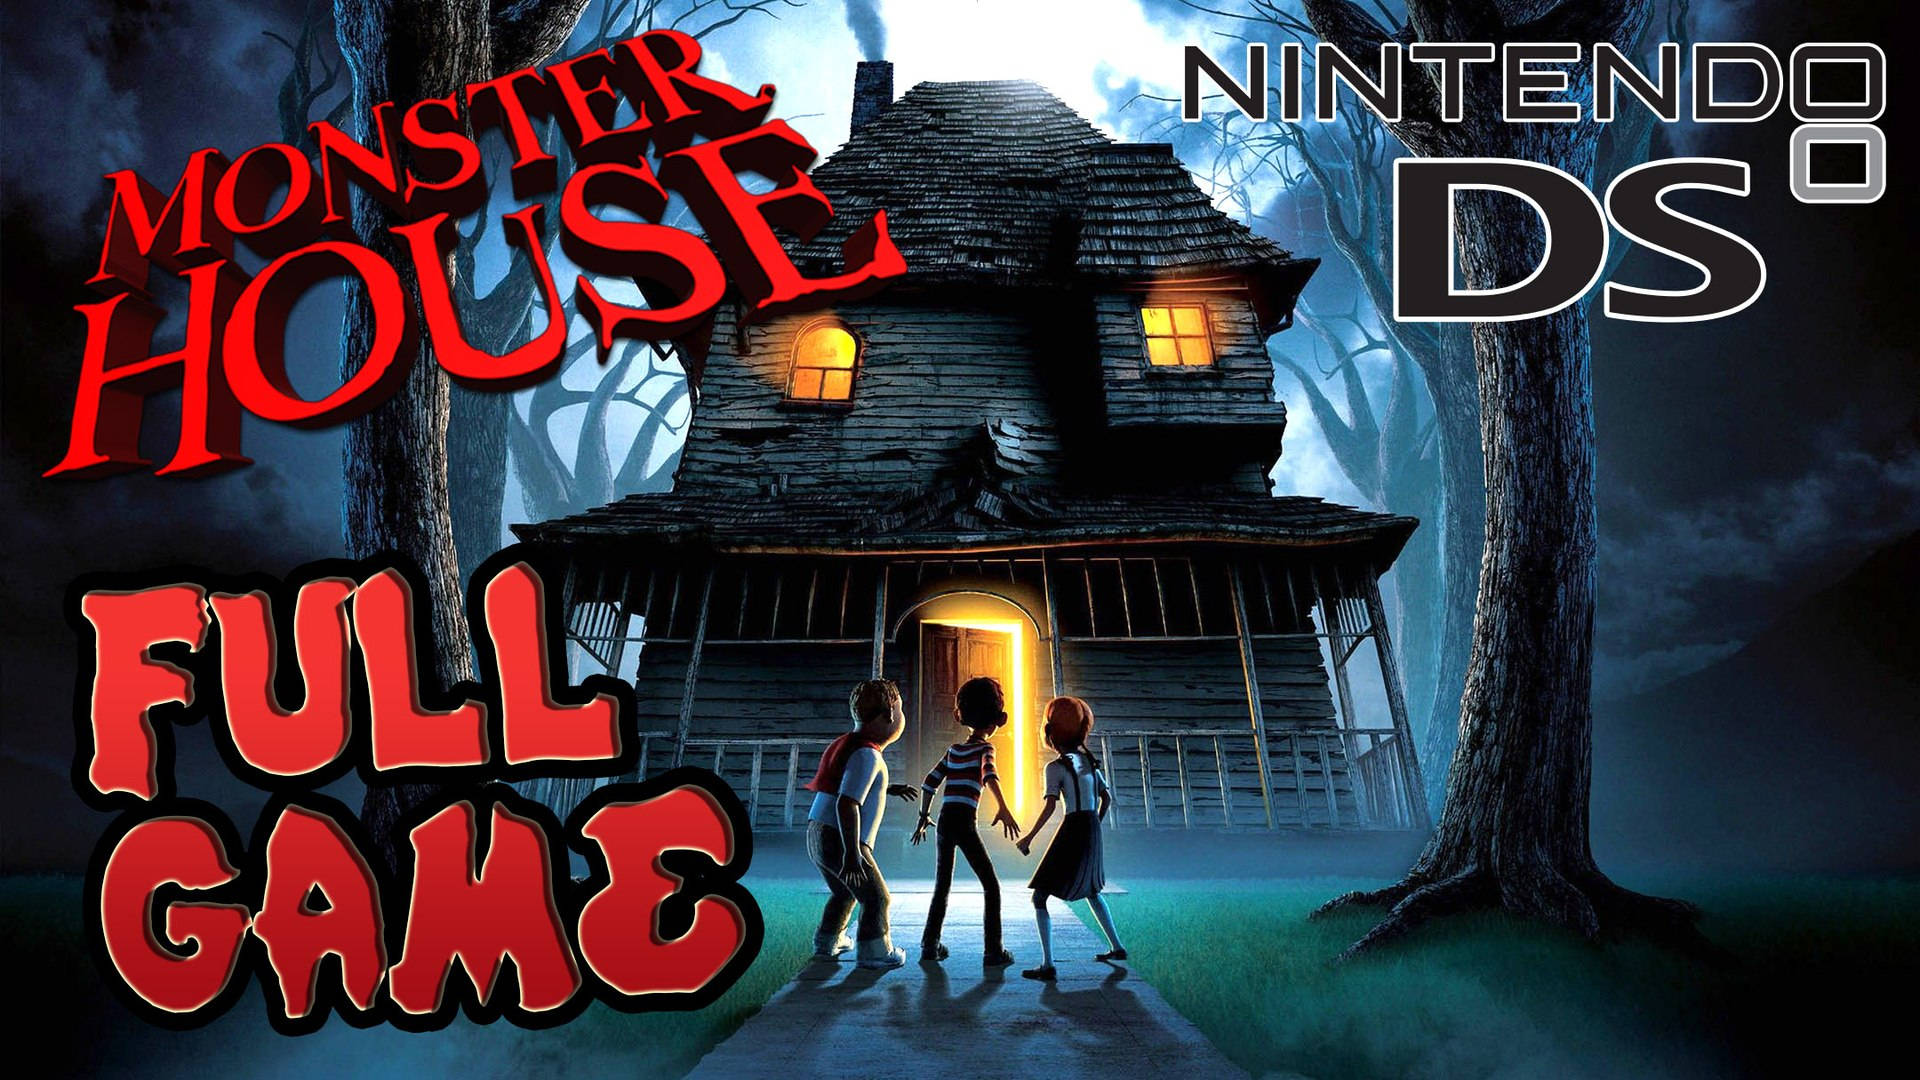 Monster House Nintendo DS Poster Wallpaper